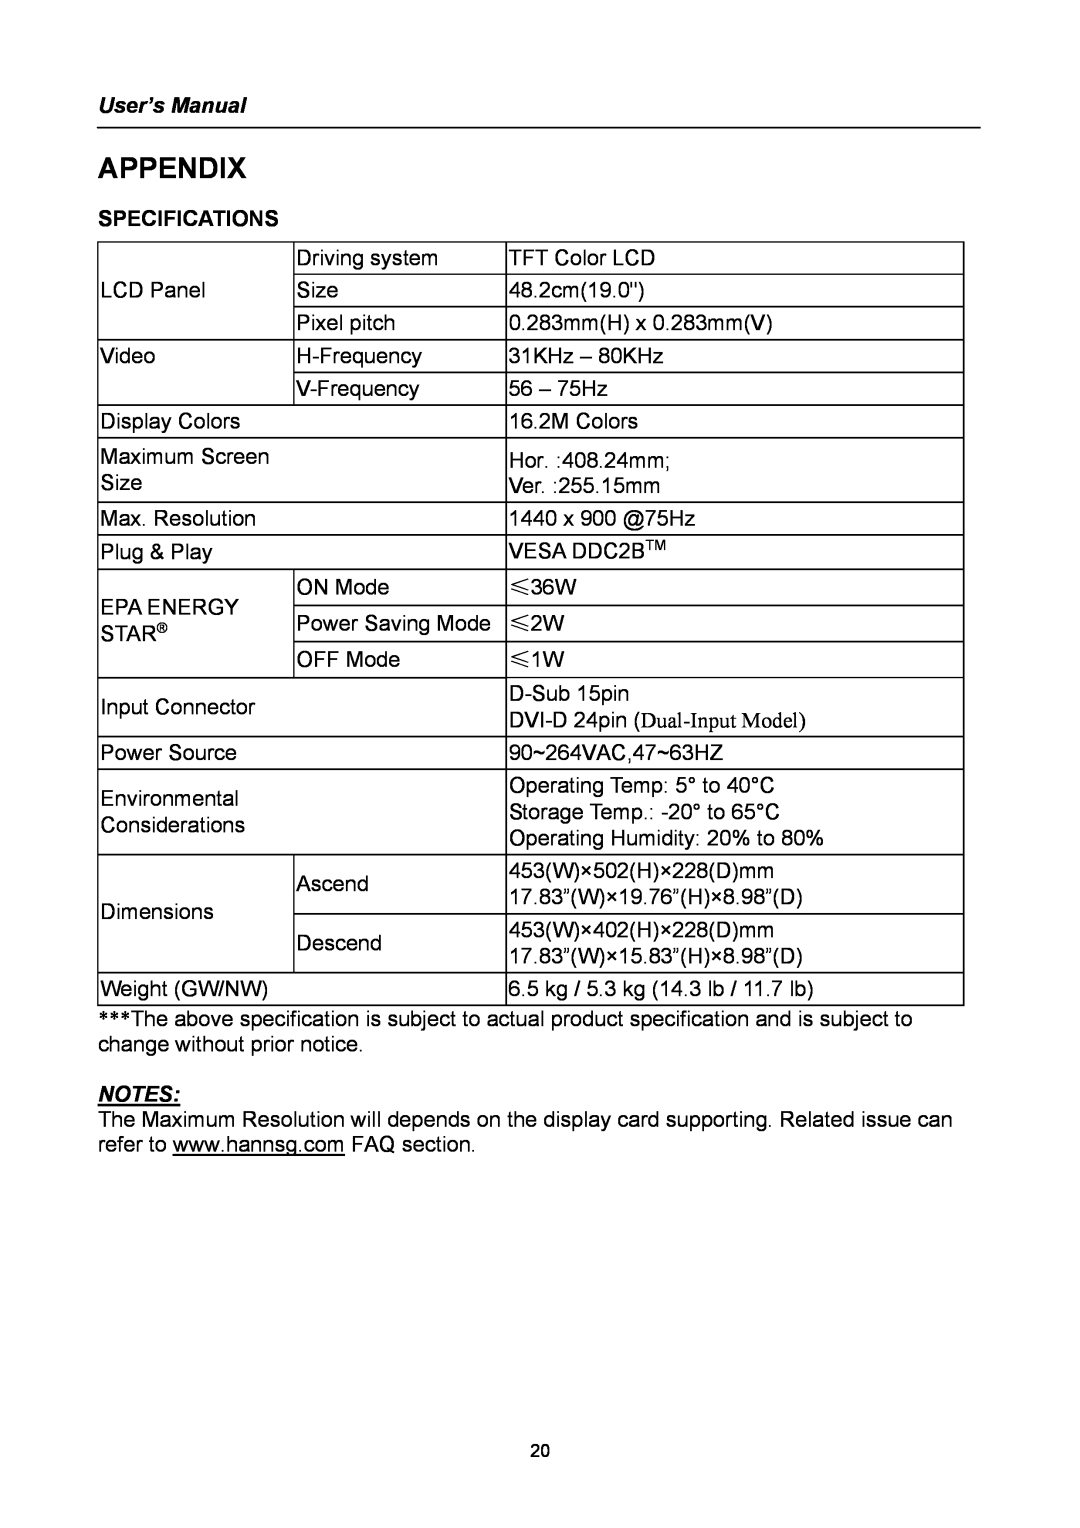 Compaq HW194 user manual Appendix, User’s Manual, Specifications 